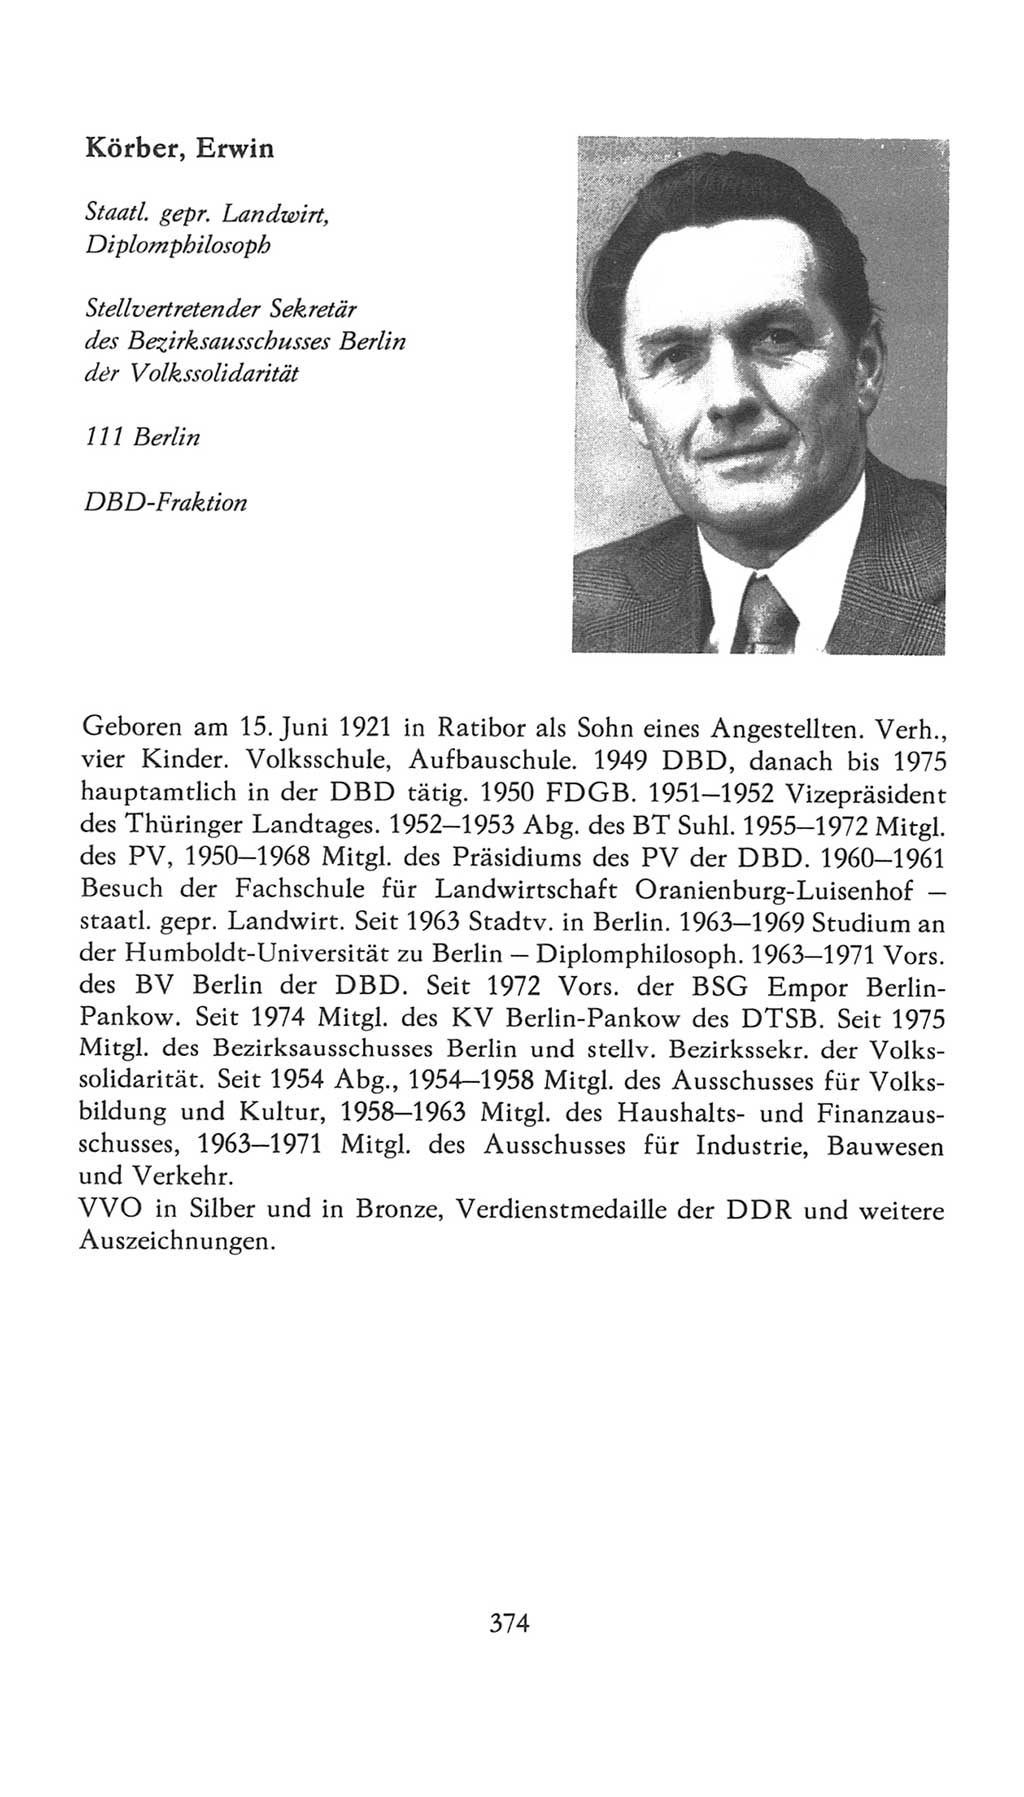 Volkskammer (VK) der Deutschen Demokratischen Republik (DDR), 7. Wahlperiode 1976-1981, Seite 374 (VK. DDR 7. WP. 1976-1981, S. 374)